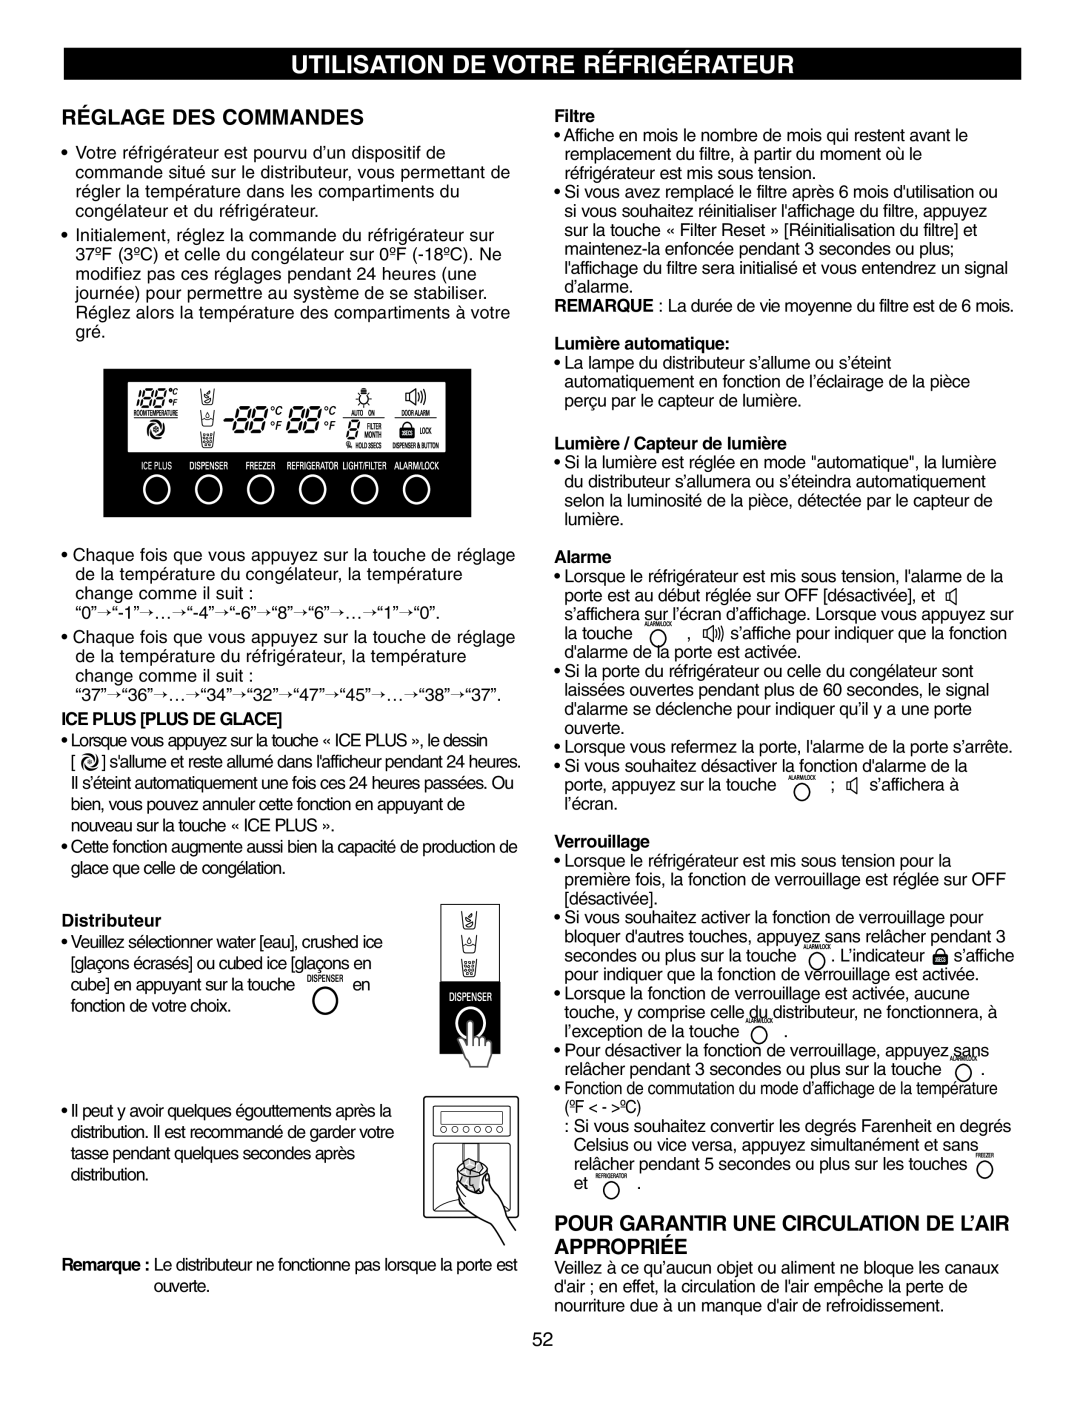 LG Electronics LFX25970 Utilisation De Votre Réfrigérateur, Réglage Des Commandes, Ice Plus Plus De Glace, Distributeur 